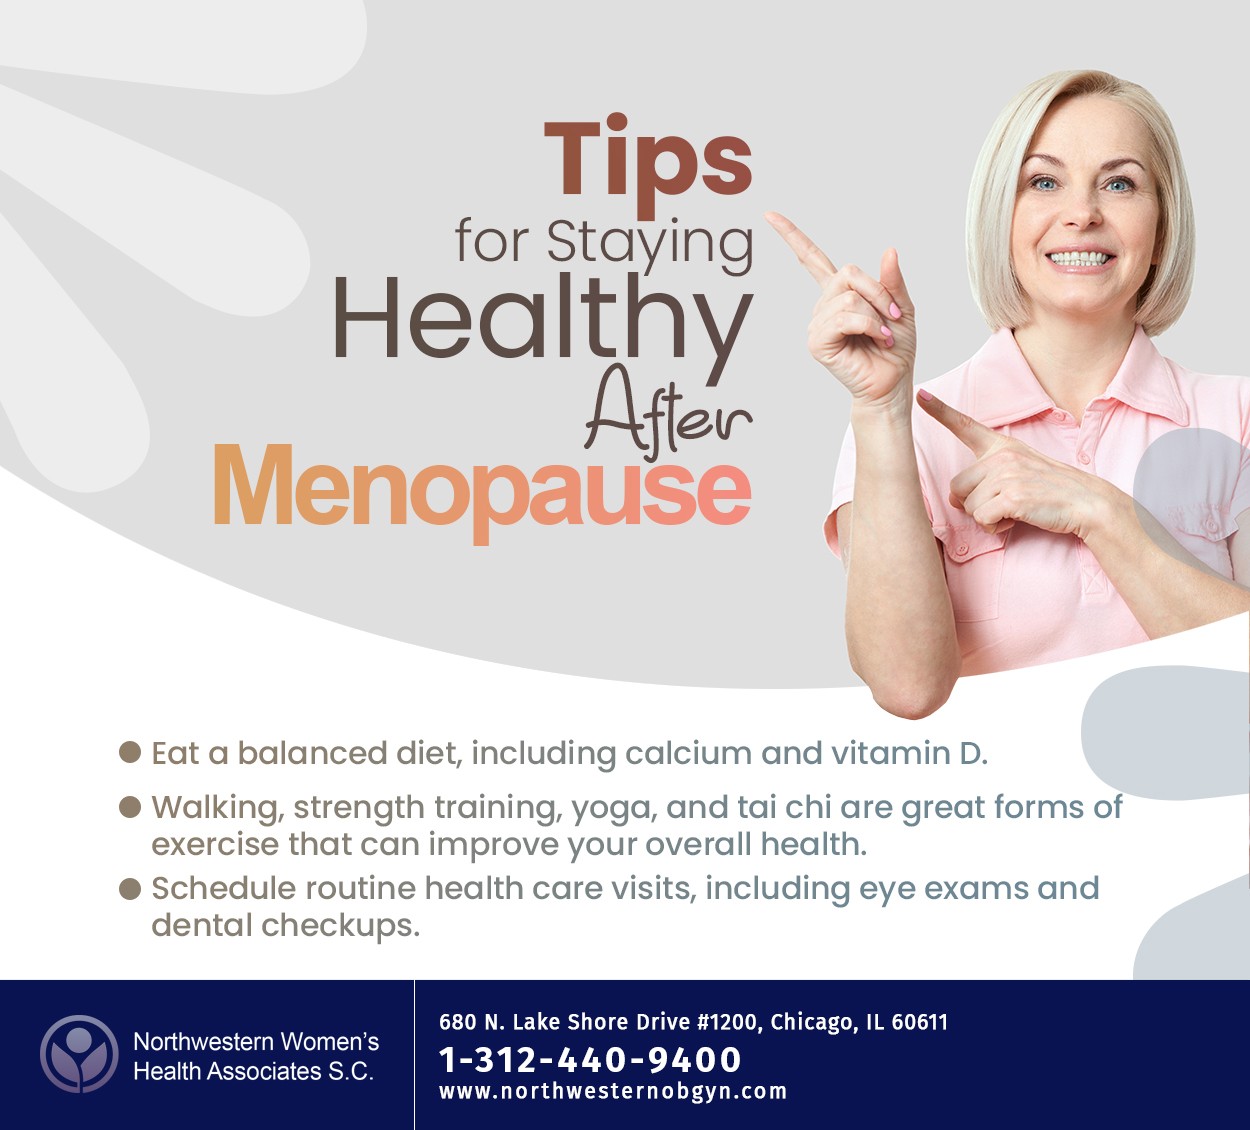 Menopause Quiz - Women's Health Network